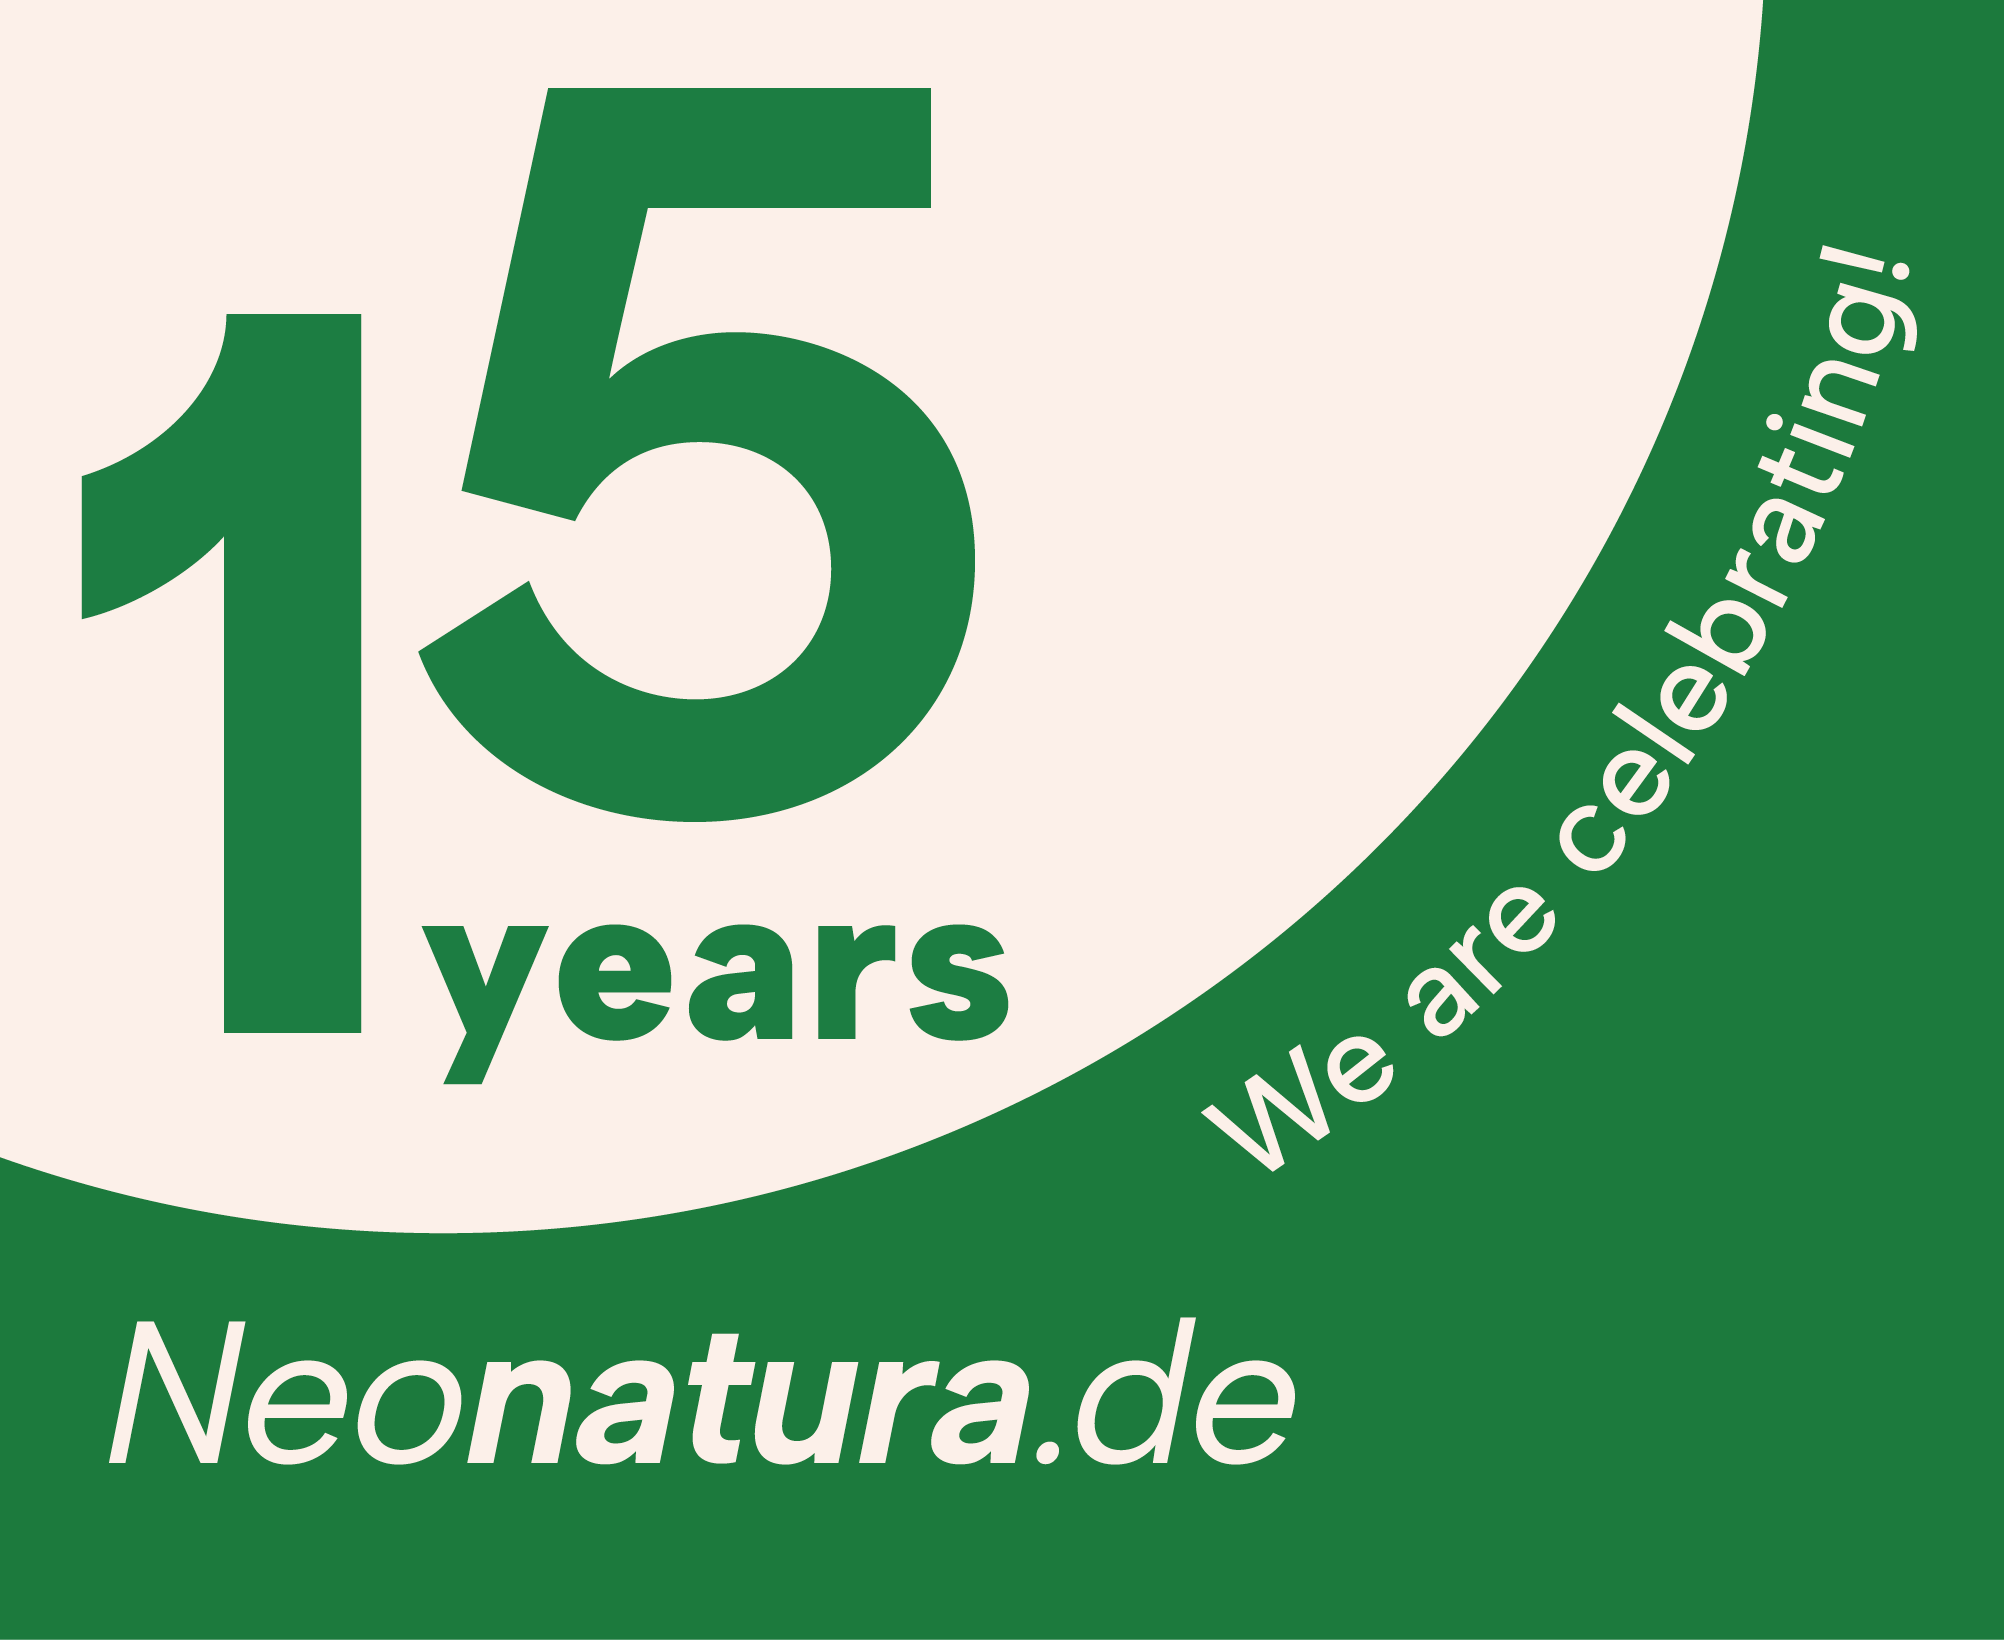 15 years Neonatura